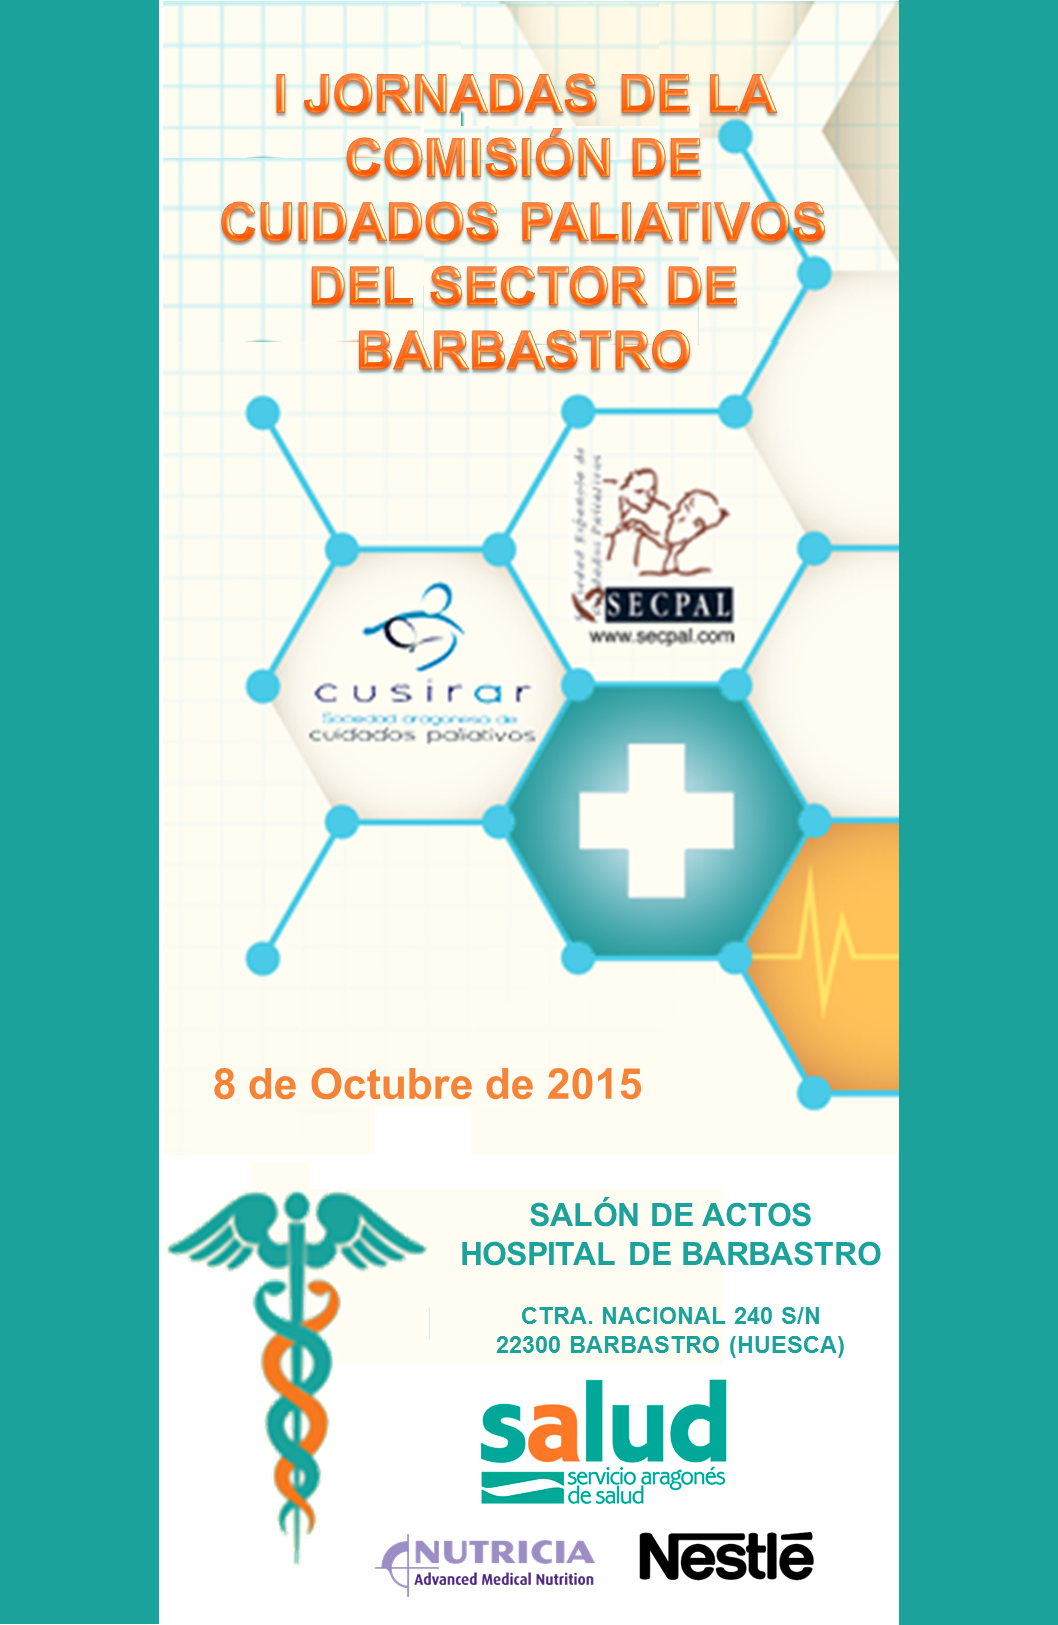 I Jornadas de la Comisión de Cuidados Paliativos del Sector de Barbastro (Huesca)